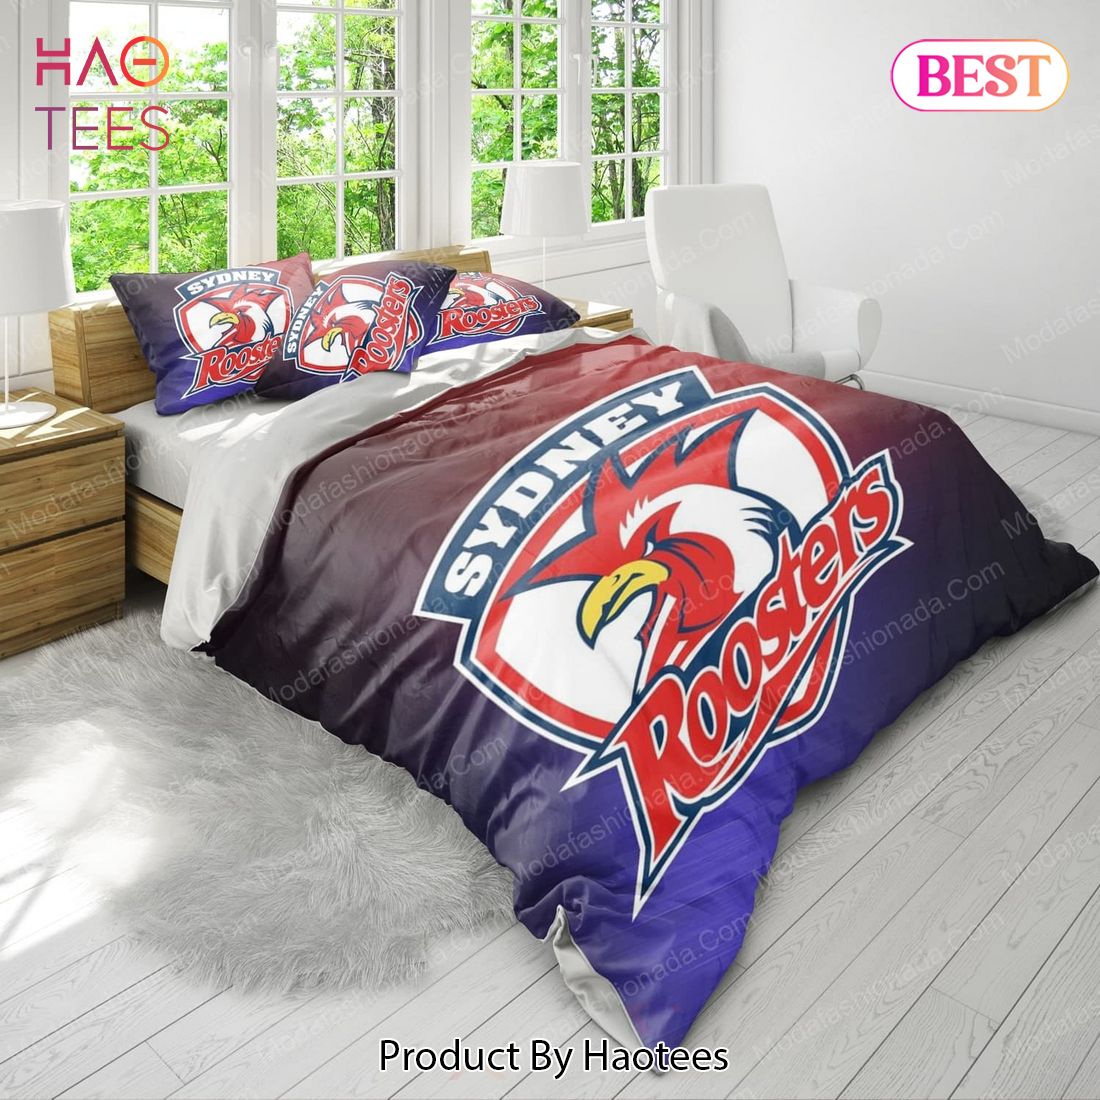 Buy Sydney Roosters Logo Bedding Sets 02 Bed Sets, Bedroom Sets, Comforter Sets, Duvet Cover, Bedspread